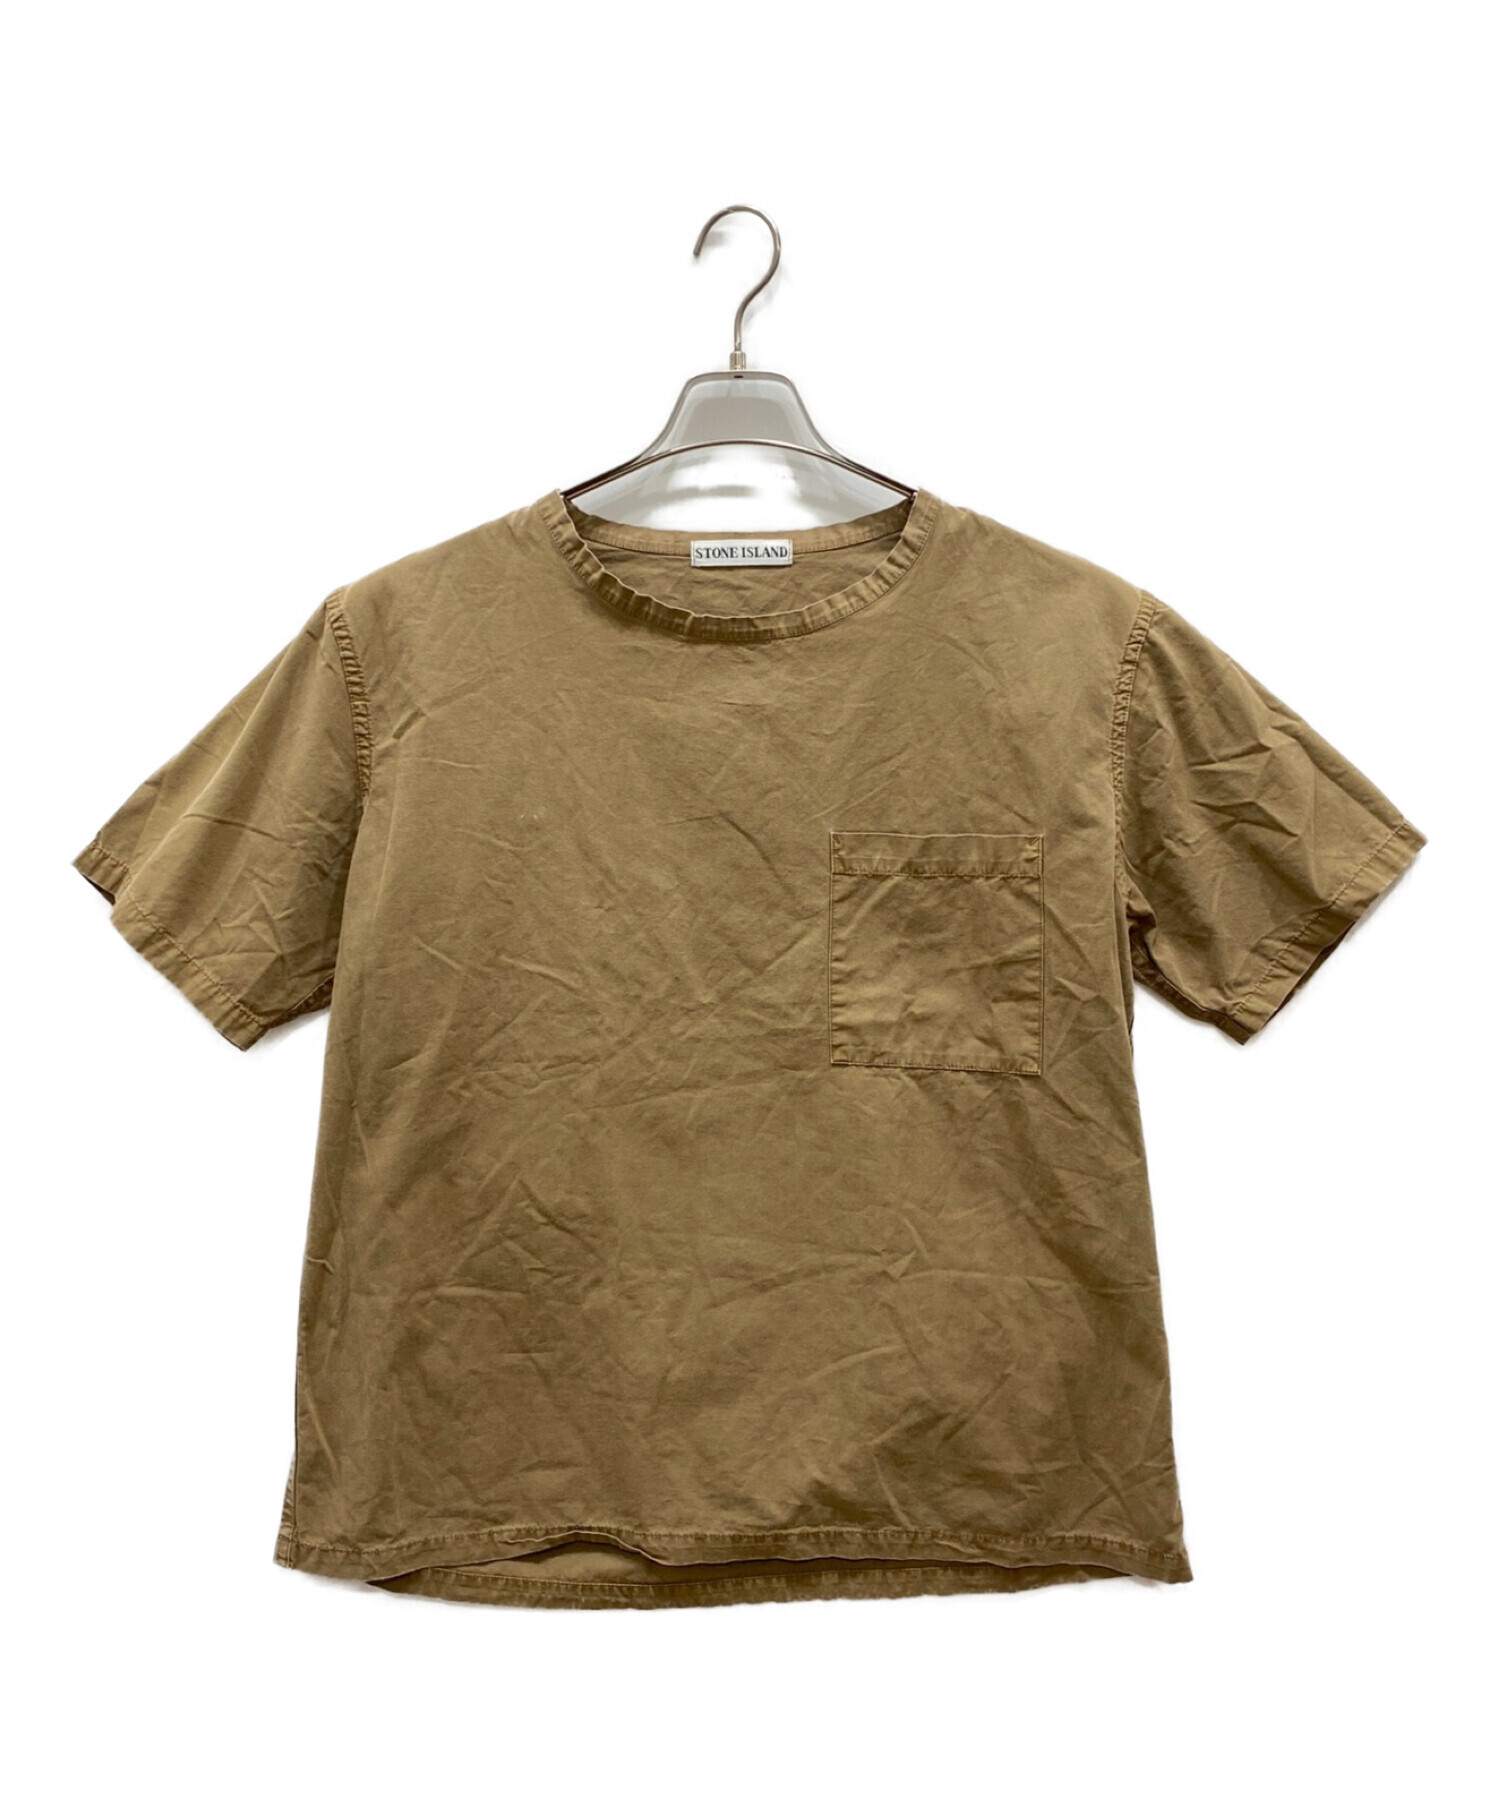 STONE ISLAND (ストーンアイランド) 90s ポケットTシャツ ブラウン サイズ:M